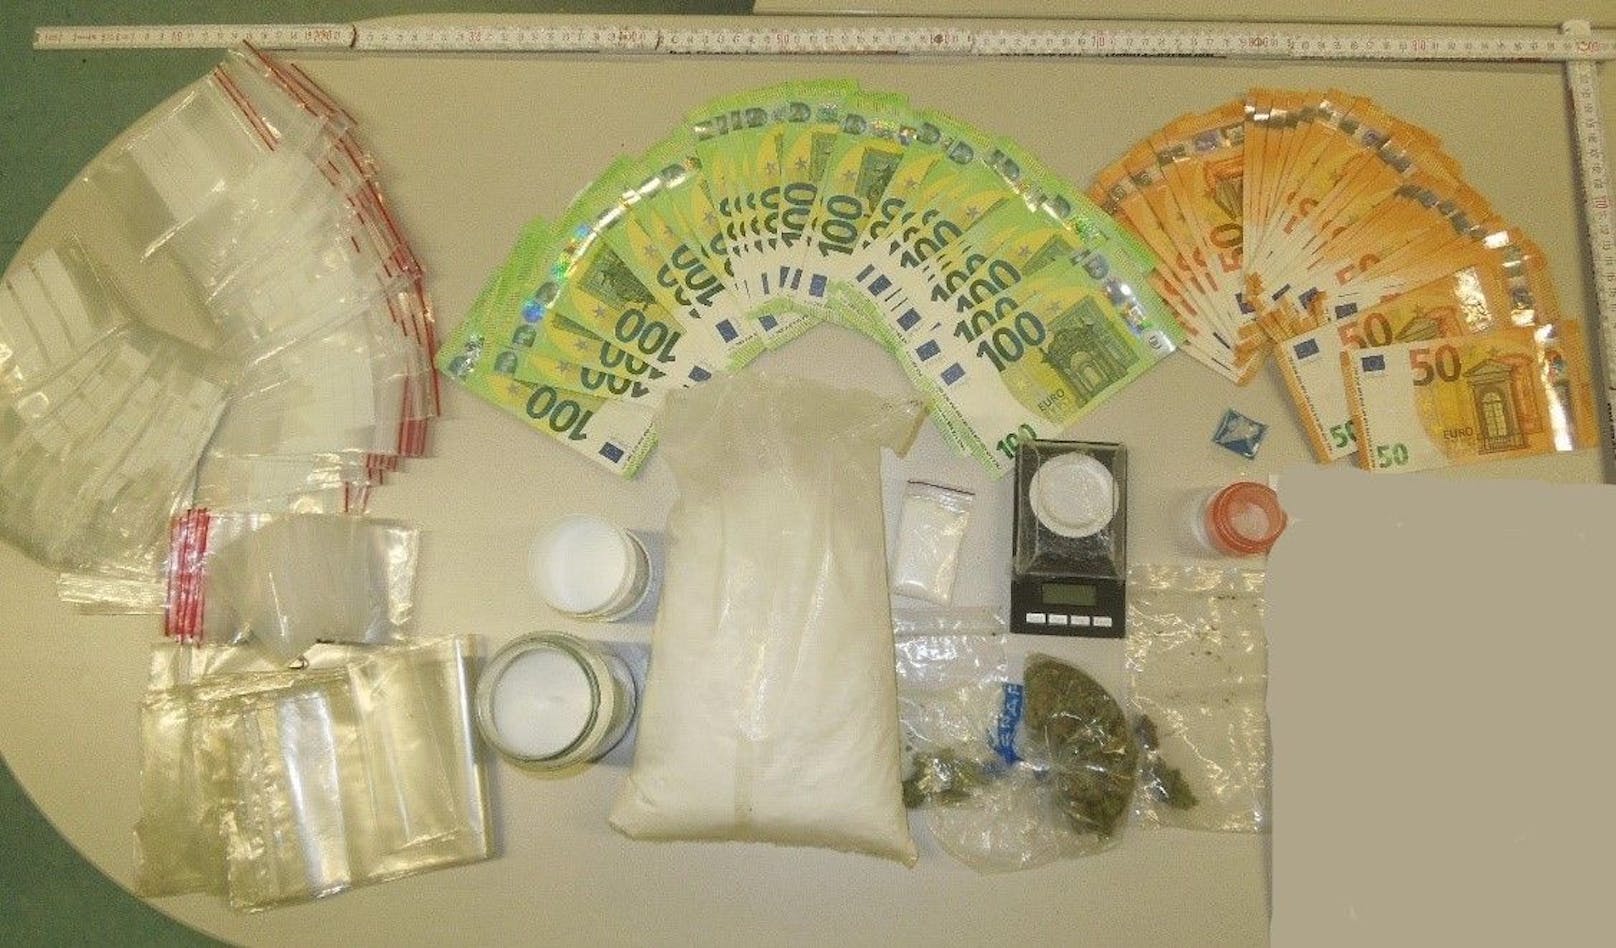 Die Polizei stellte die synthetischen Drogen und das erwirtschaftete Geld sicher.